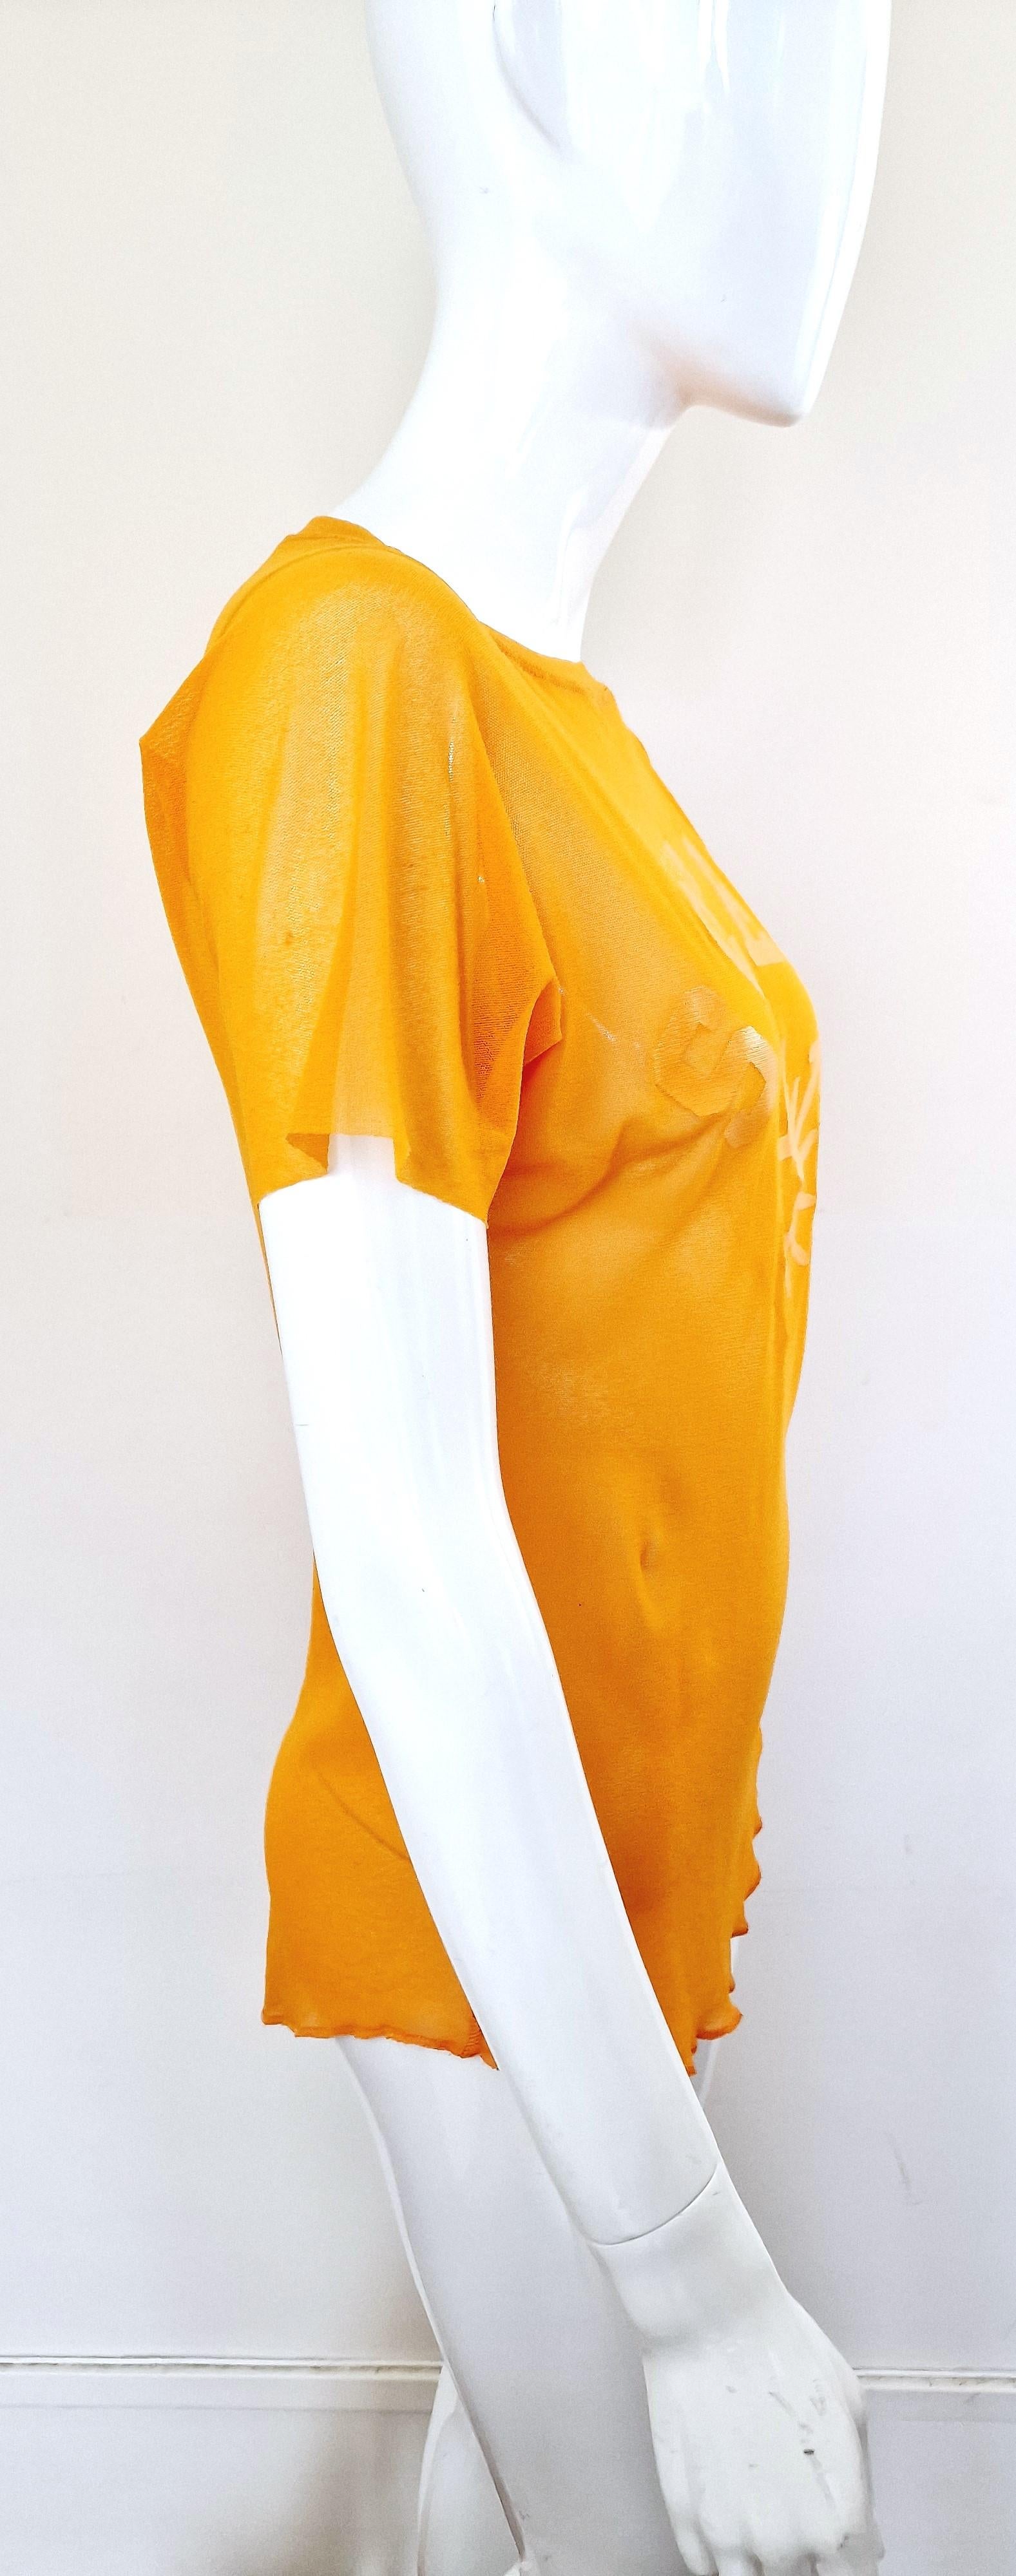 Jean Paul Gaultier Sex Sybmol Soleil Orange Logo Text Men Shirt Large XL Top For Sale 5